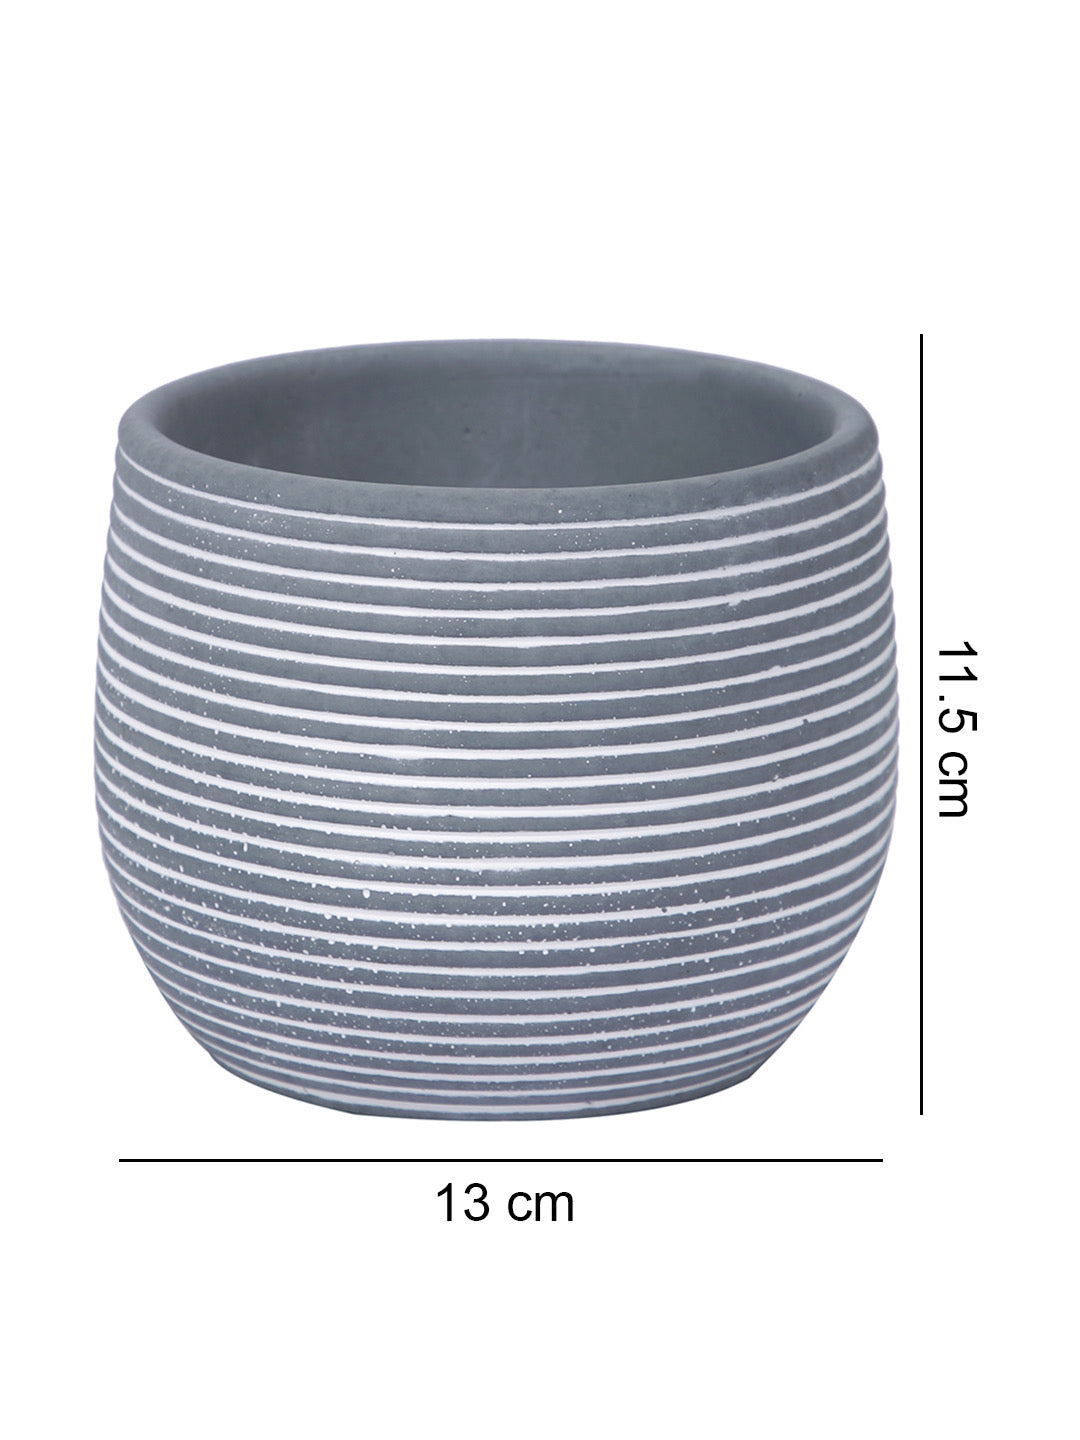 Spiral Design Ceramic Round Planter - Default Title (CHC22337GRA)